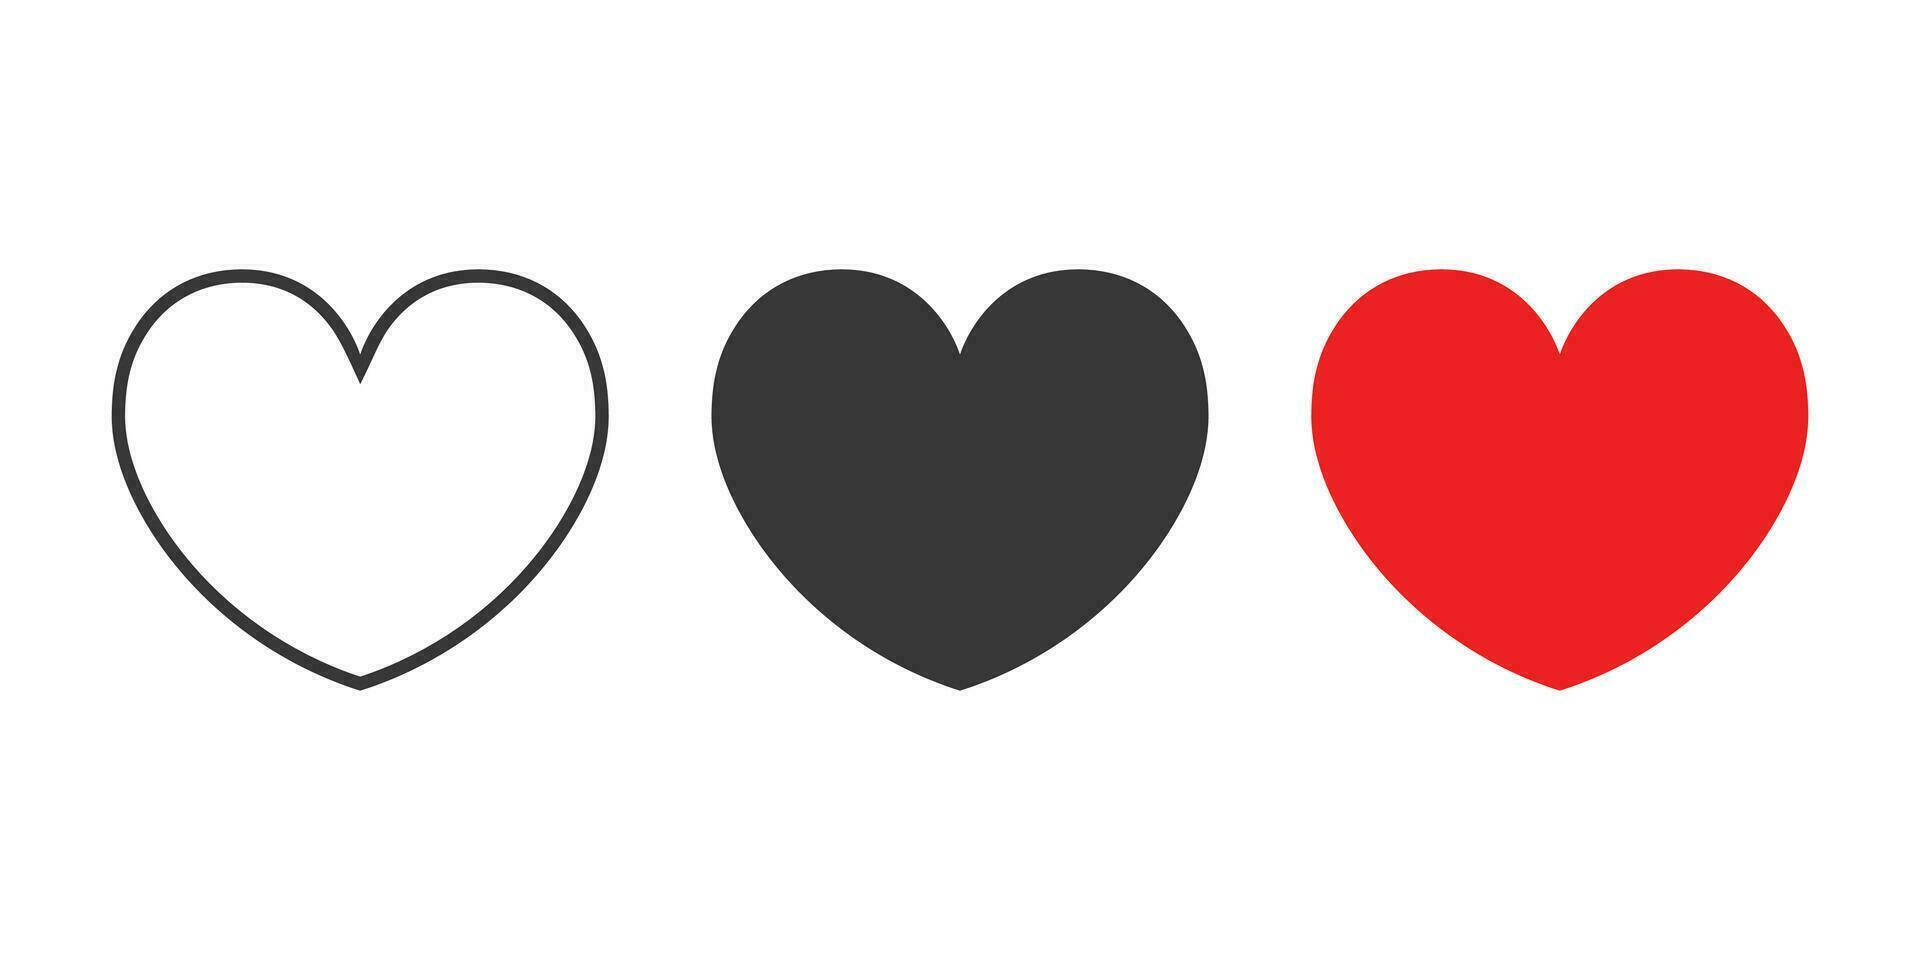 corazones íconos colocar. rojo, atrás, y contorno corazón icono colocar. vector ilustración.